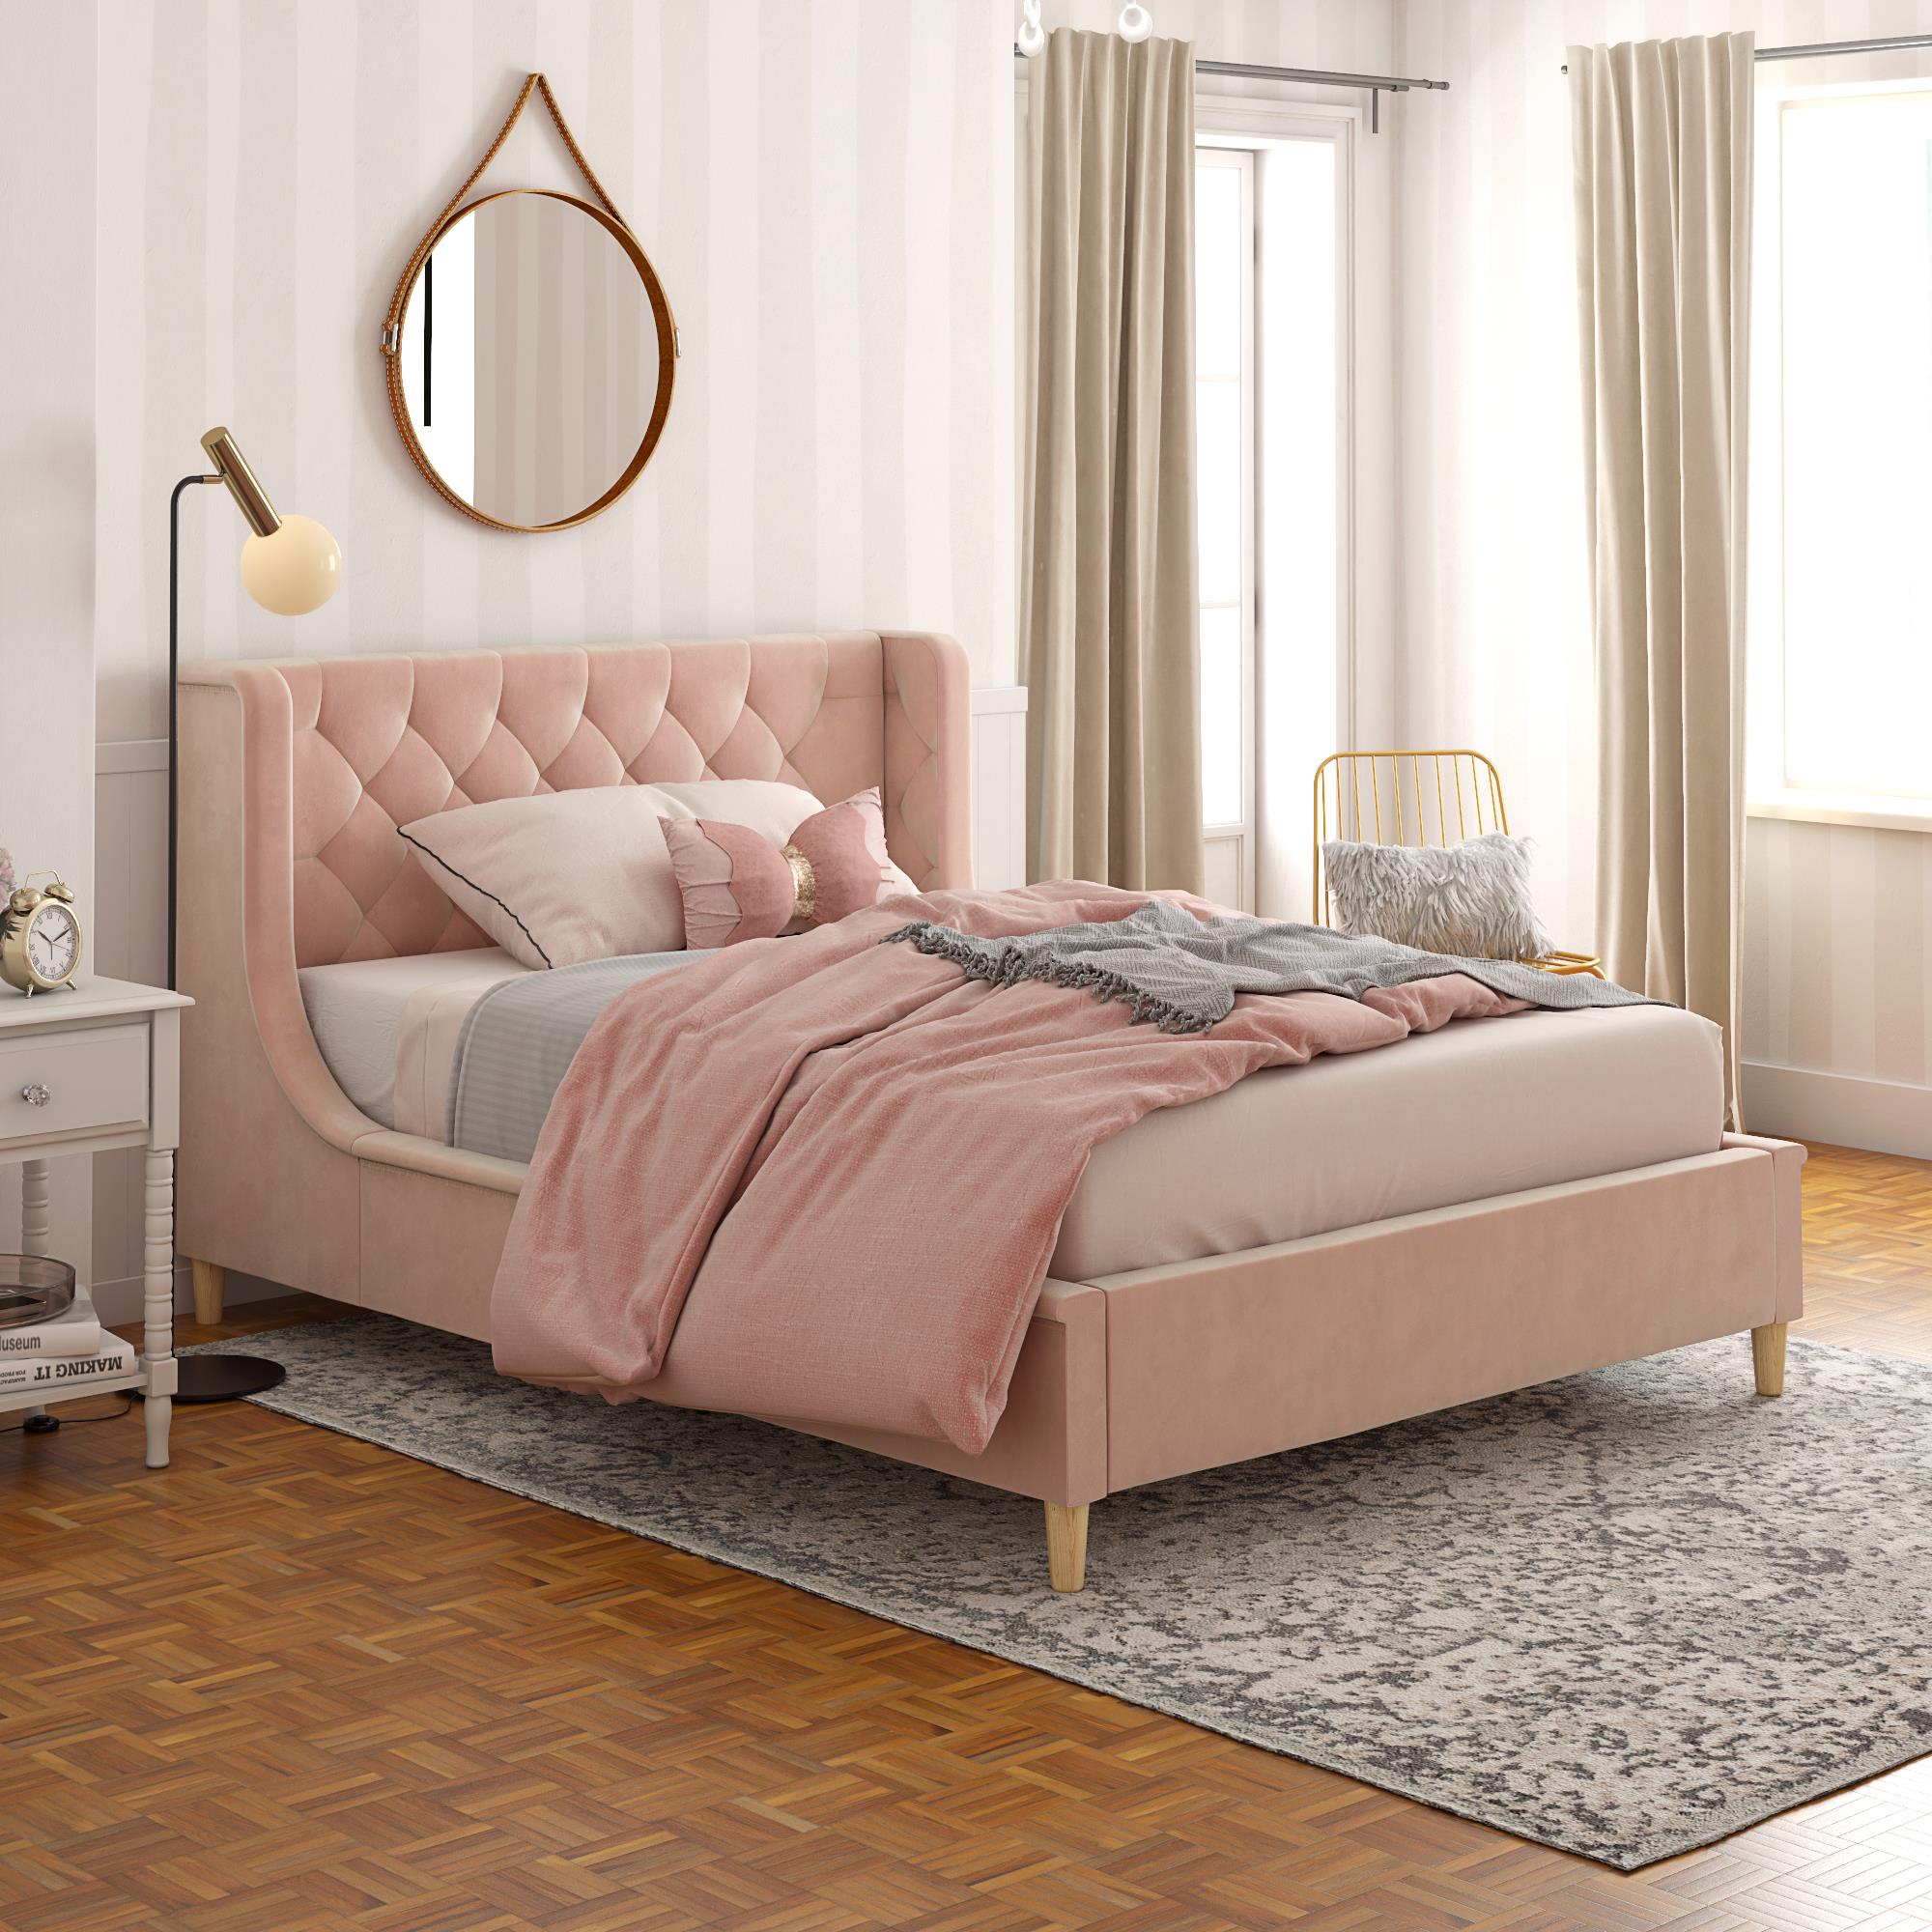 Little Seeds Monarch Hill Ambrosia Kids' Full Upholstered Bed, Pink Velvet - image 1 of 17